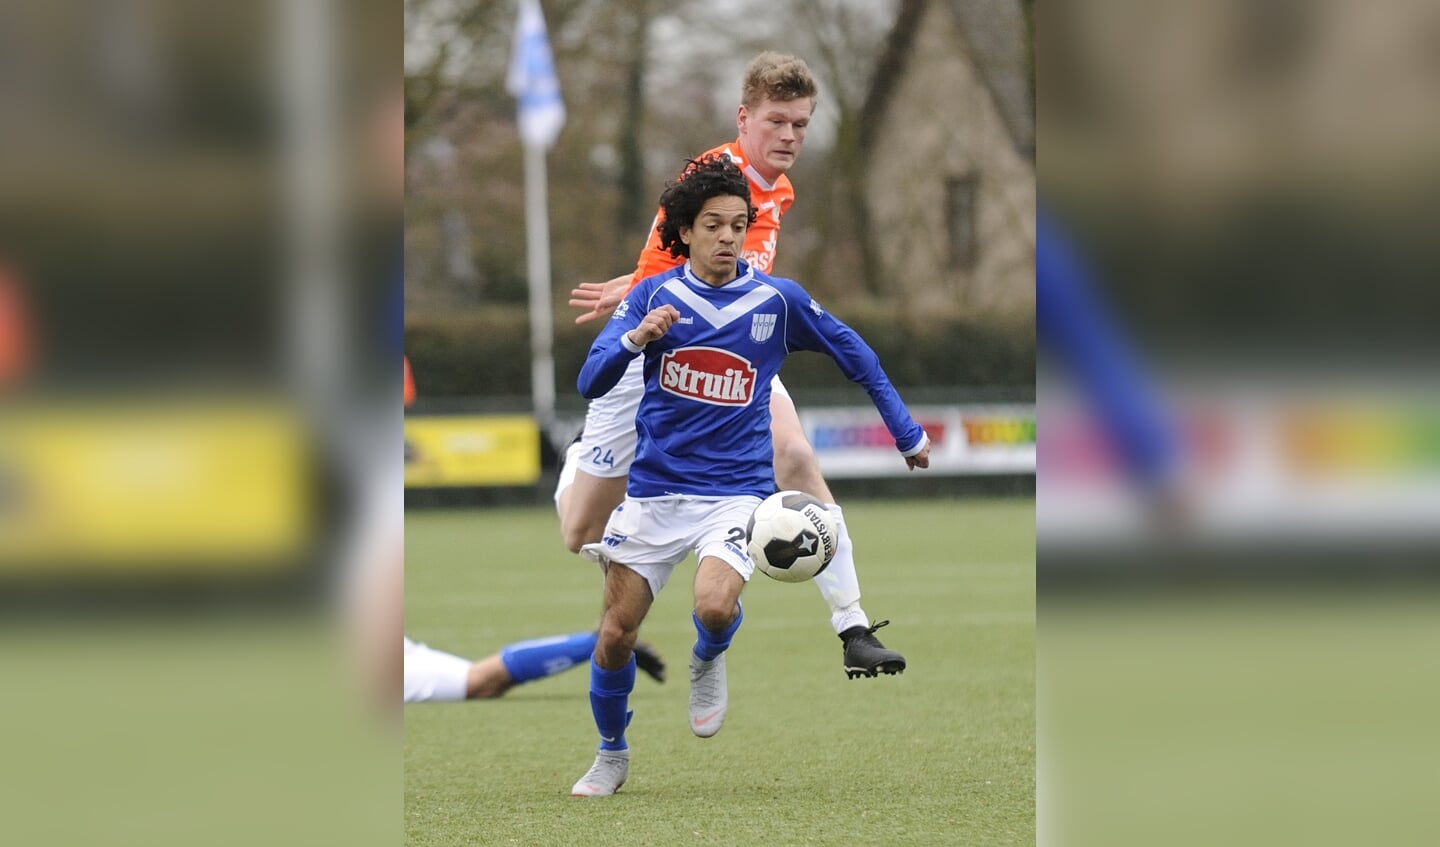 Voetbal: VVOP - Horst